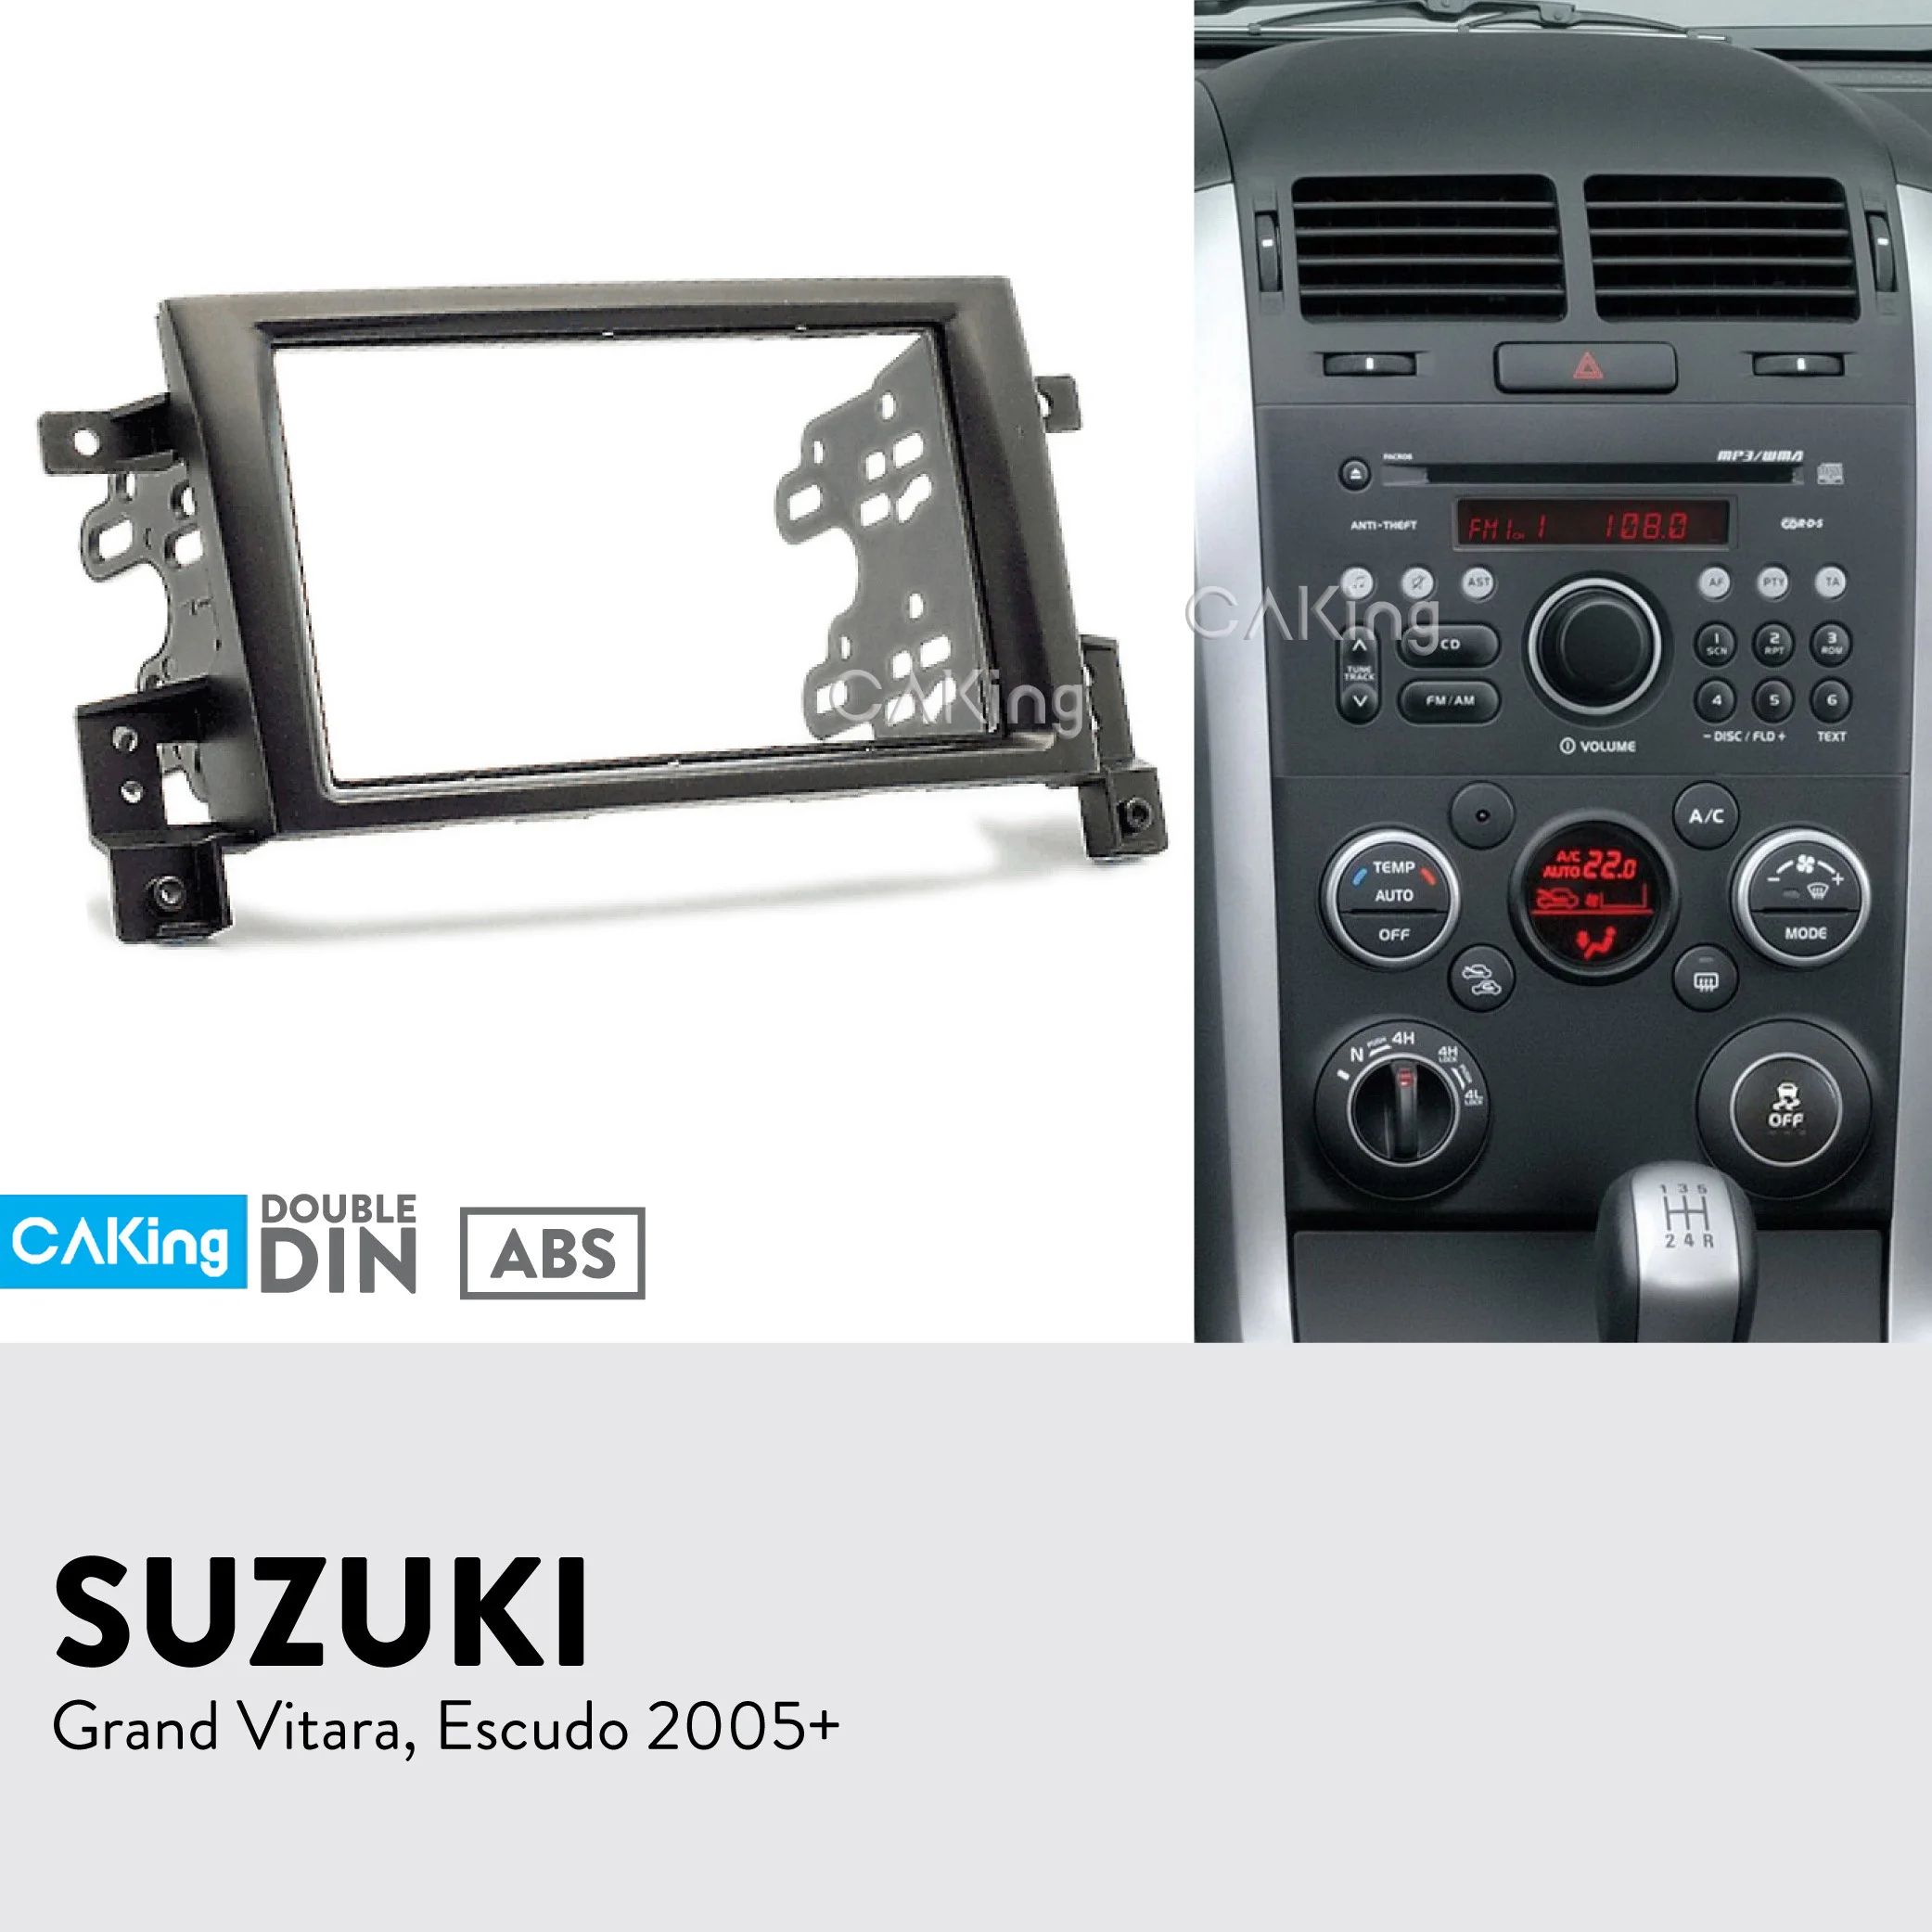 Автомобильная панель радио для SUZUKI Grand Vitara, Escudo 2005+ набор для установки приборной панели переходная пластина крышка адаптера крышка консоли